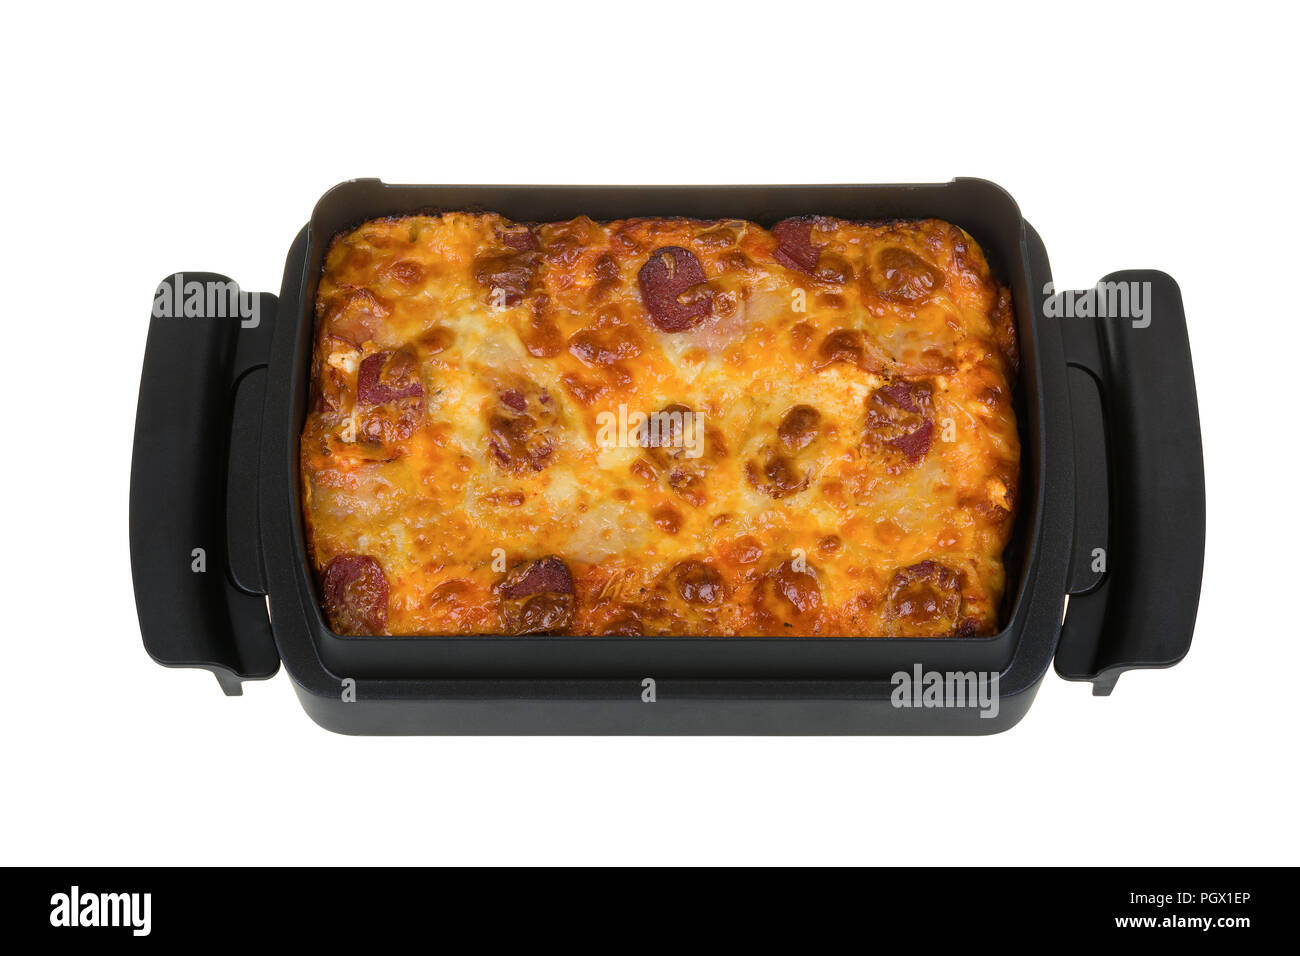 Des pizzas au salami, bacon, sauce tomate, mozzarella, fromage jaune dans un plat de cuisson carré isolé sur fond blanc. Banque D'Images